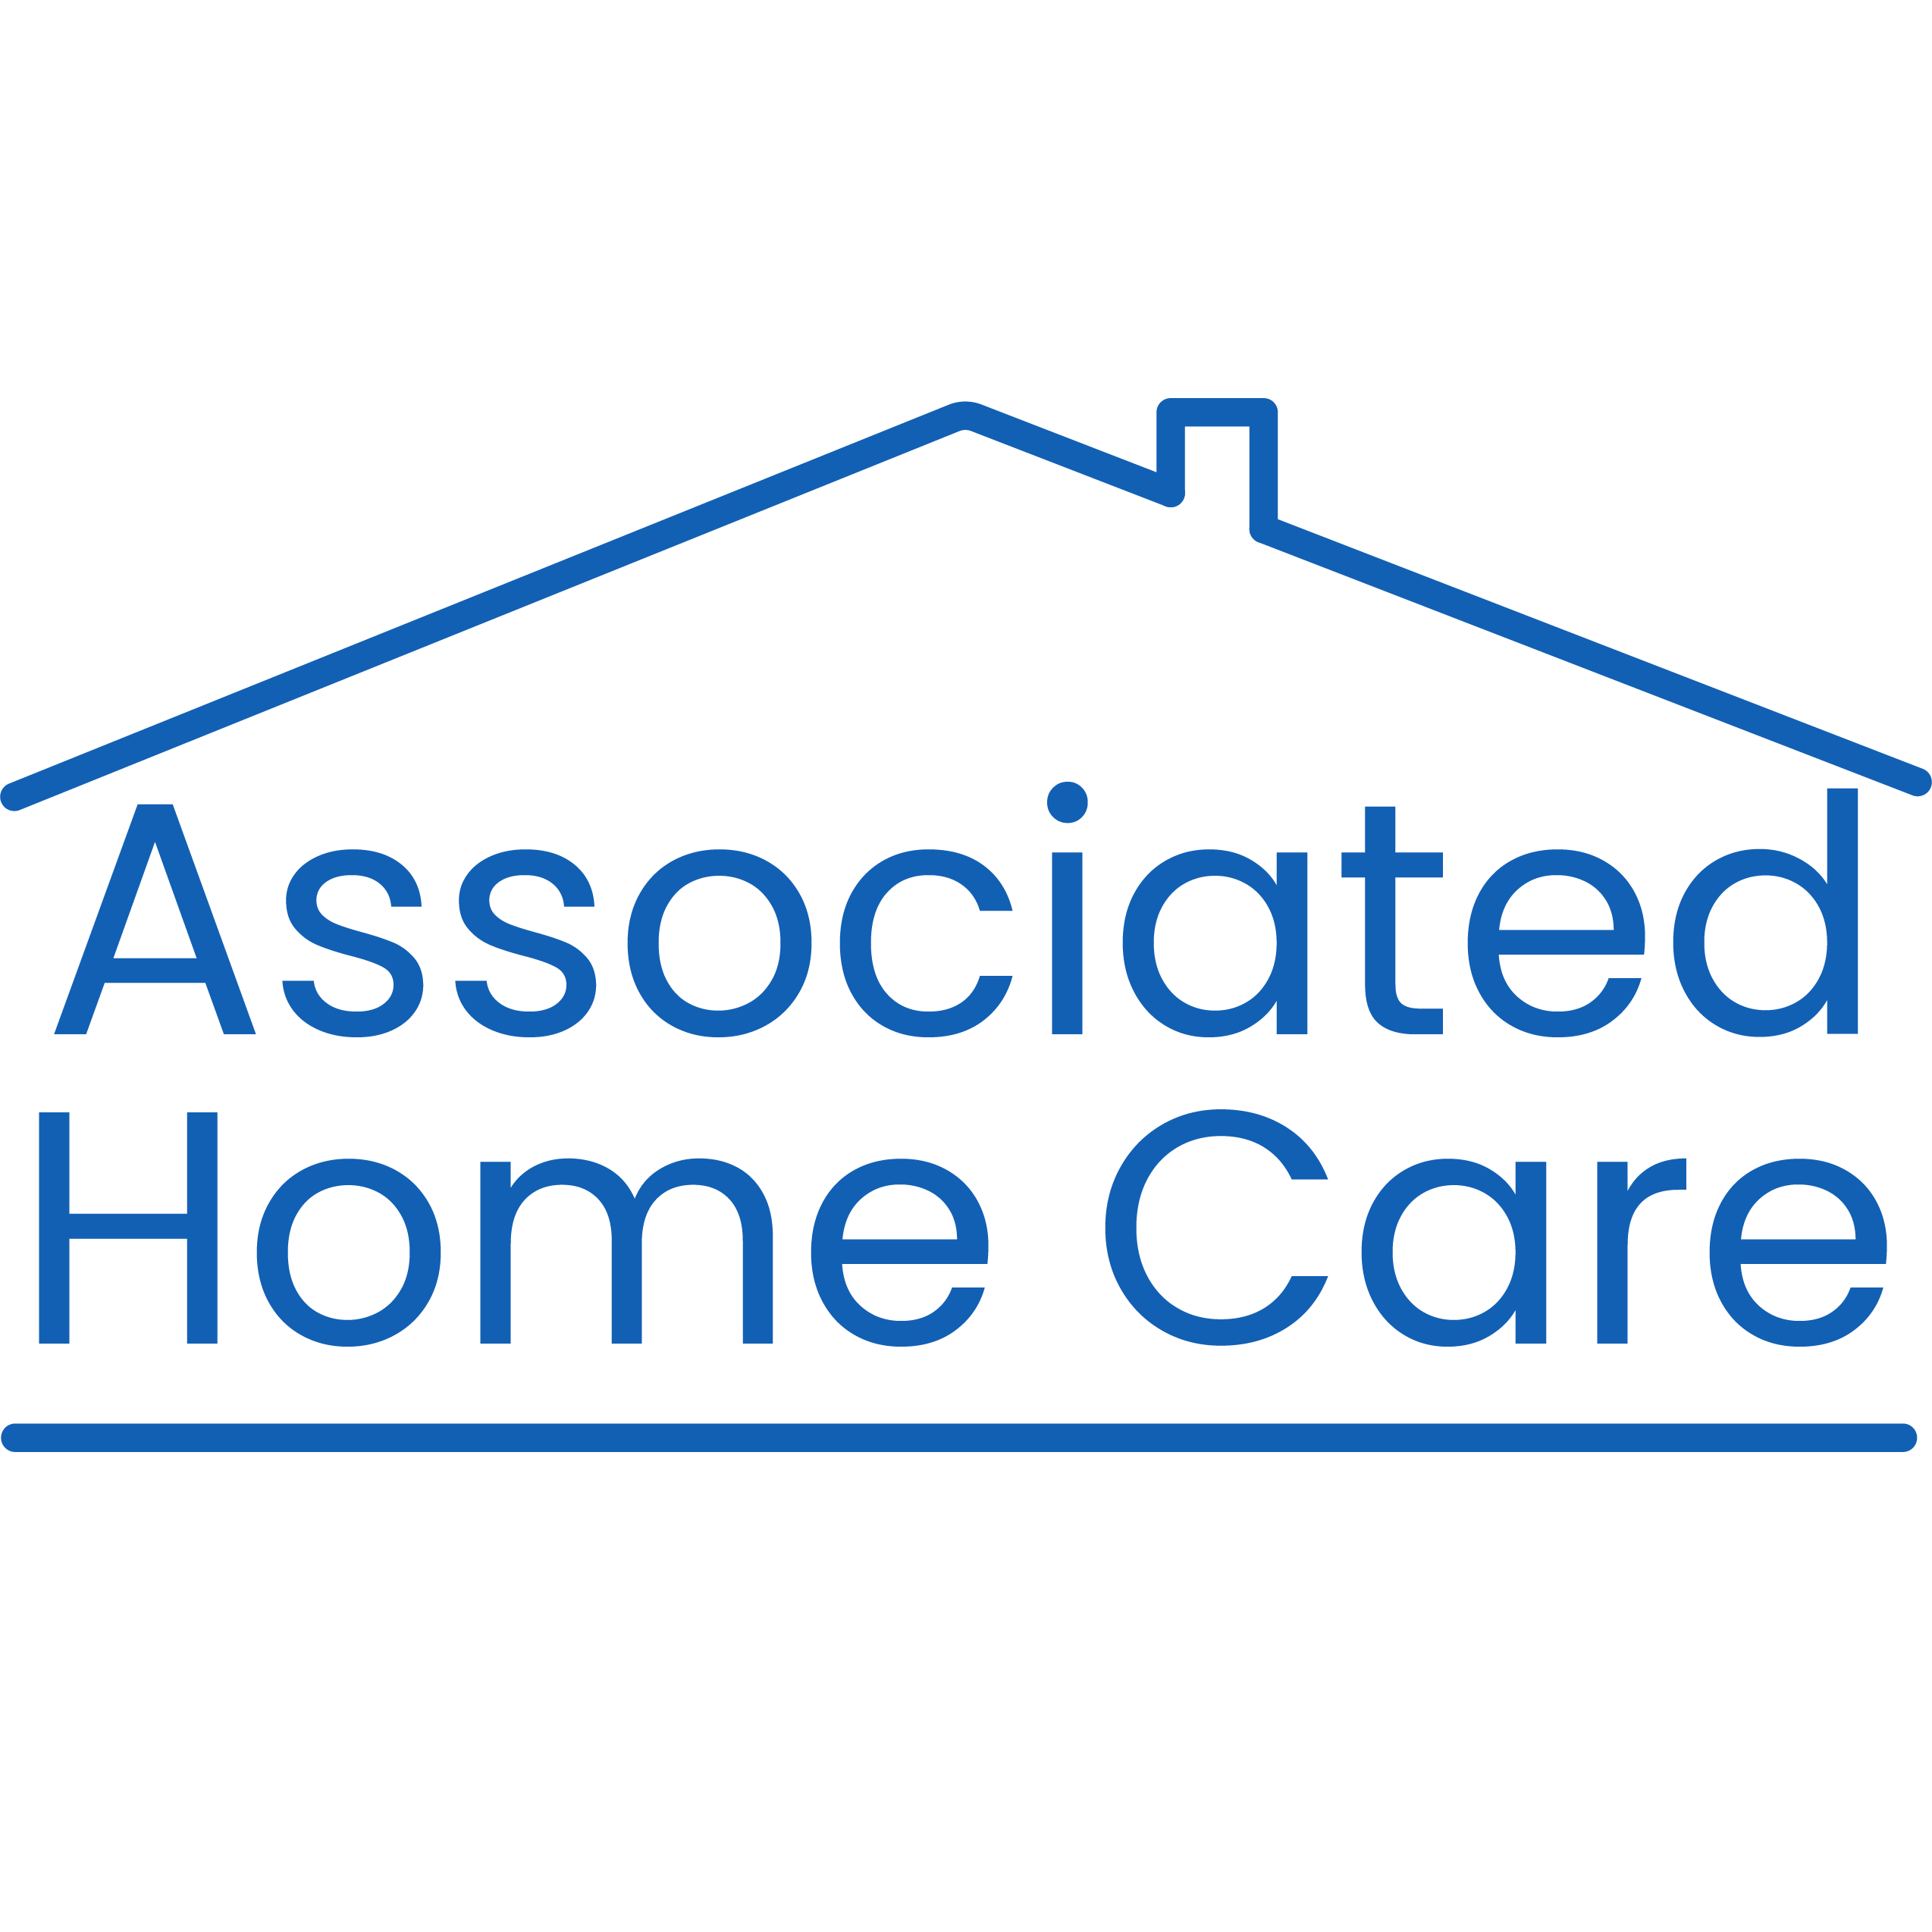 Associated Home Care - Beverly, MA 01915 - (978)922-0745 | ShowMeLocal.com